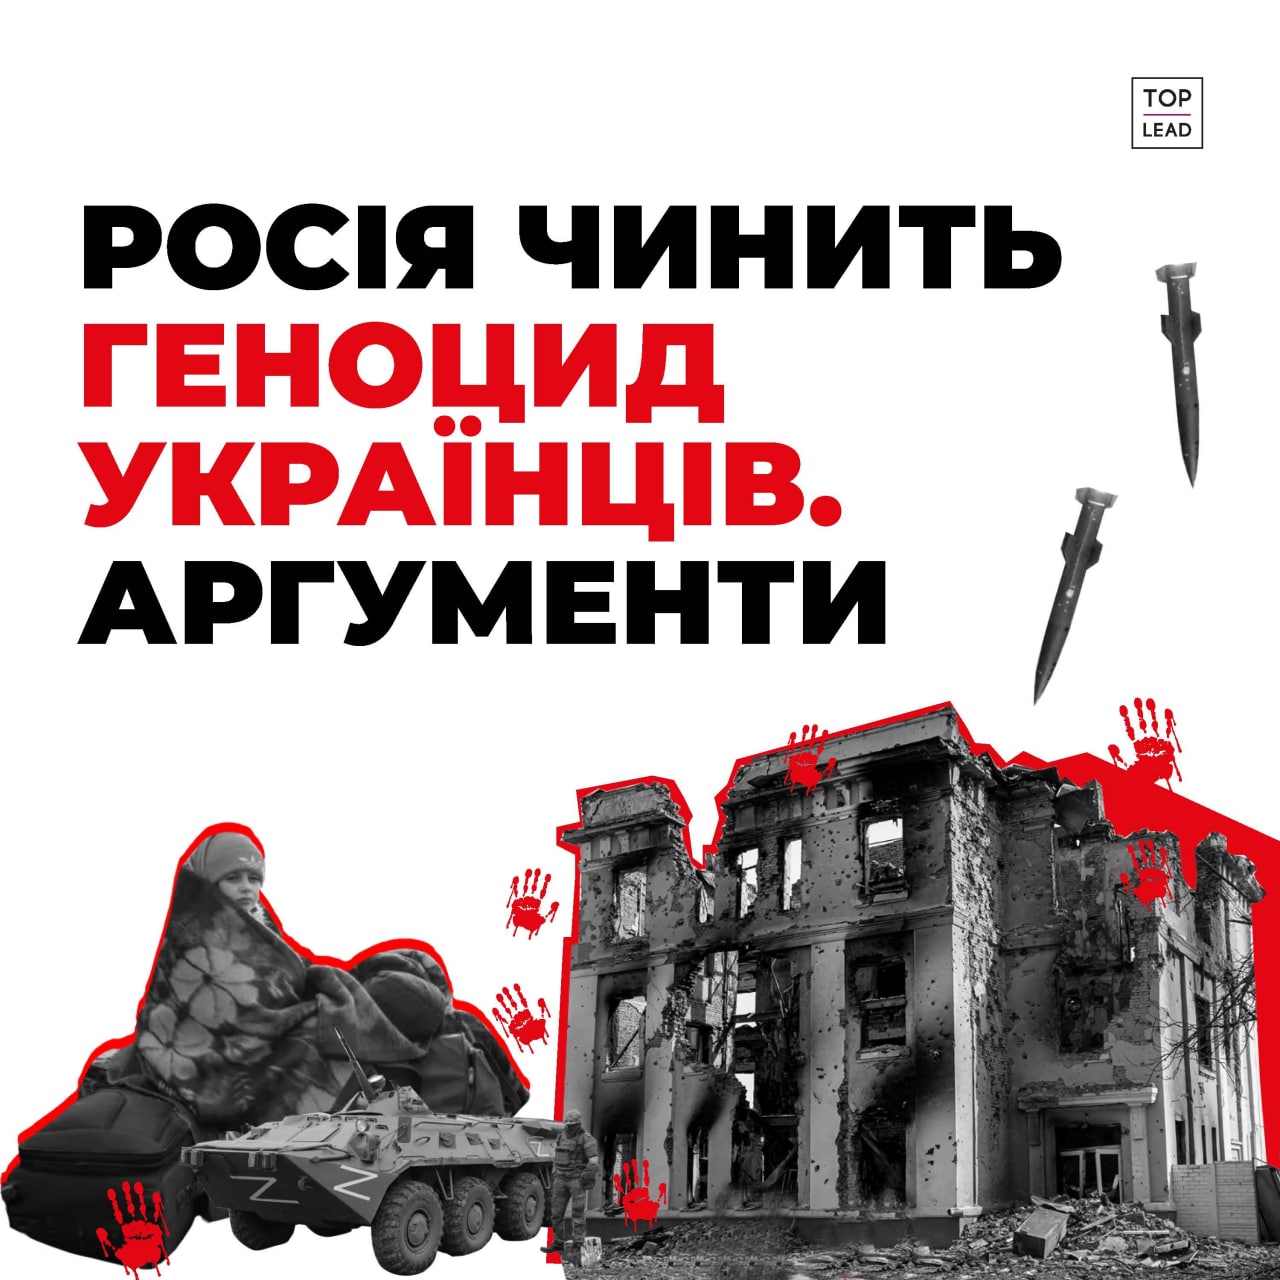 ПАРЄ визнала, що росія чинить геноцид українського народу